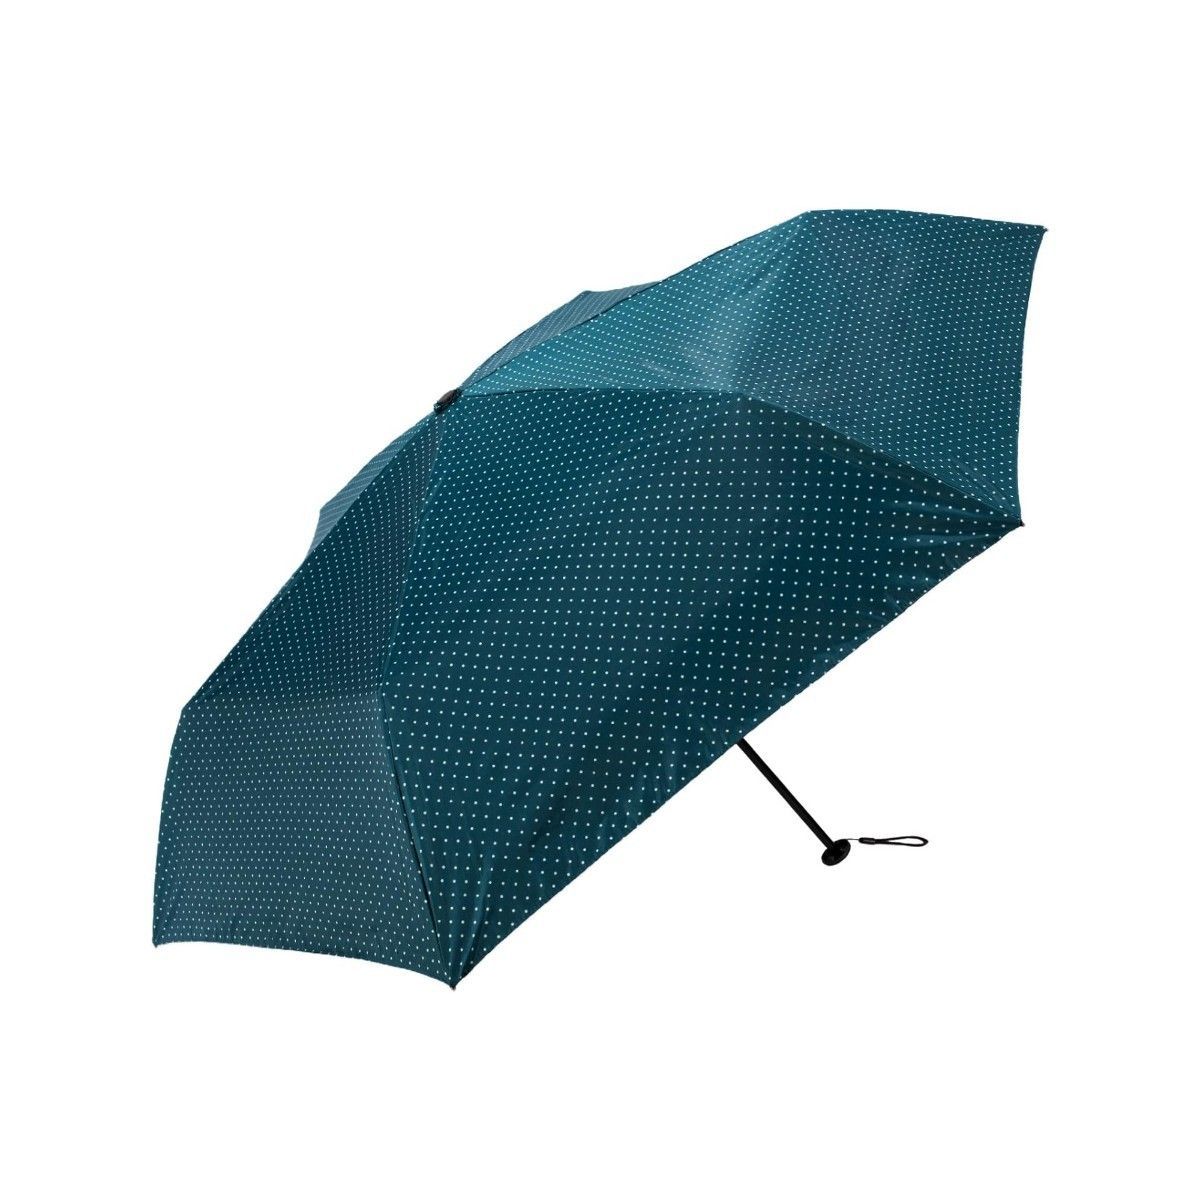 【新品】BaySedy 6本骨 折りたたみ傘 晴雨兼用 直径約98cm 軽量163g 完全遮光 UPF50+ 99.9%UVカット